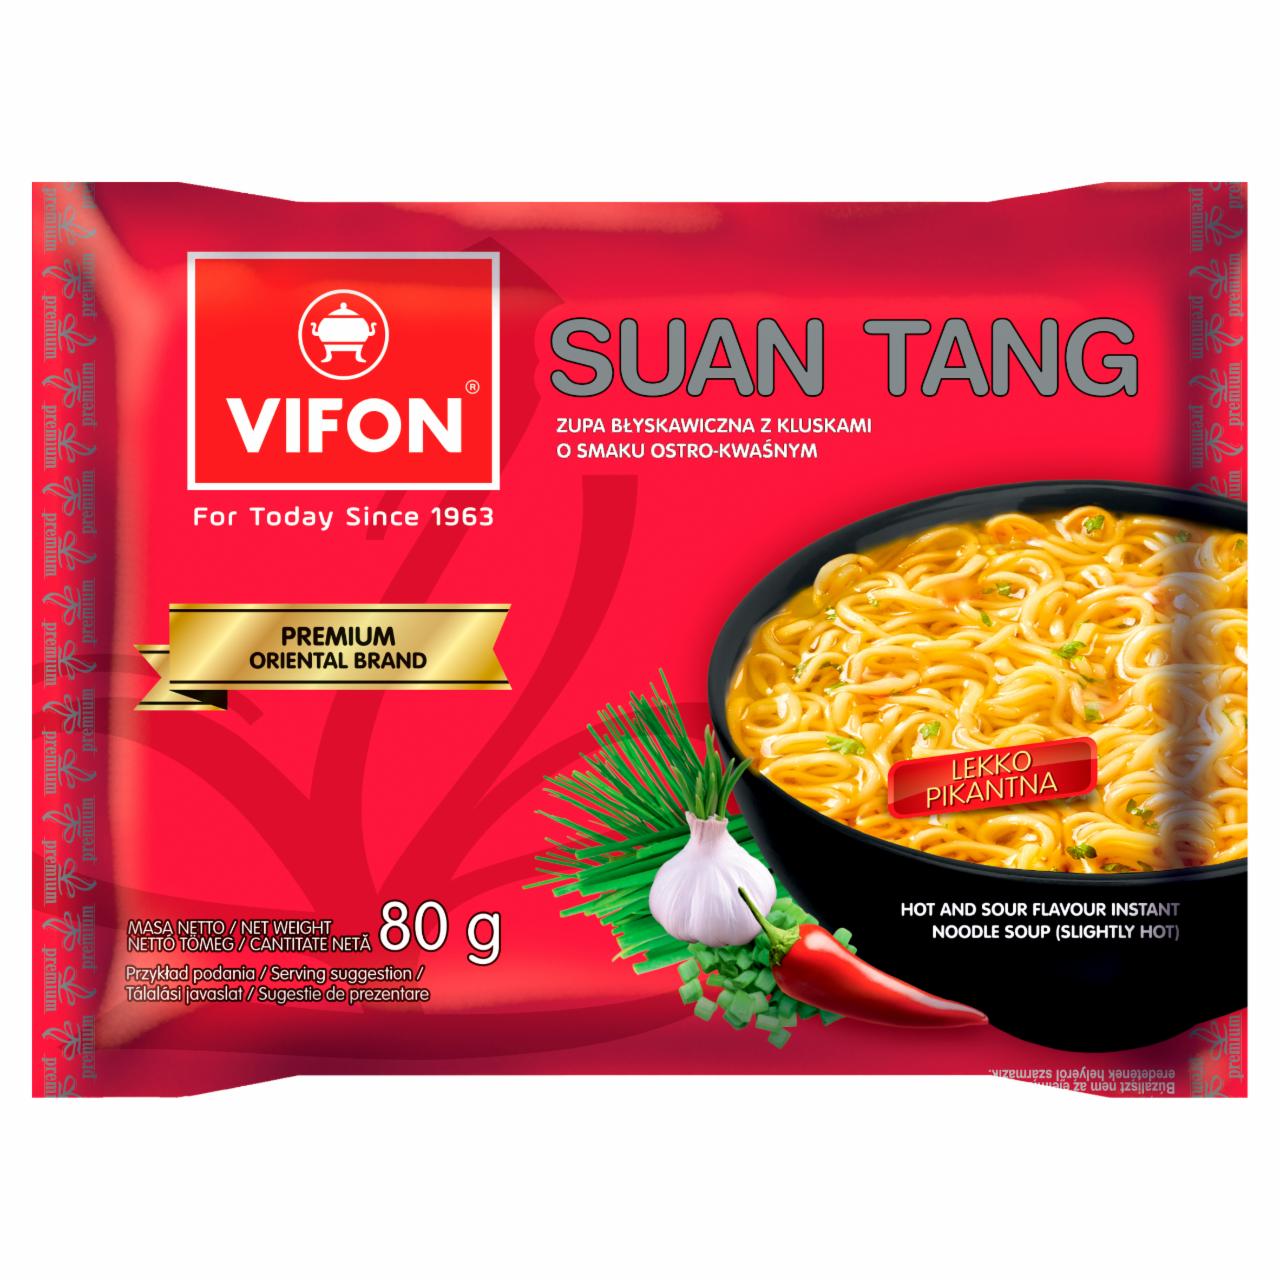 Zdjęcia - Vifon Suan Tang Zupa błyskawiczna 80 g